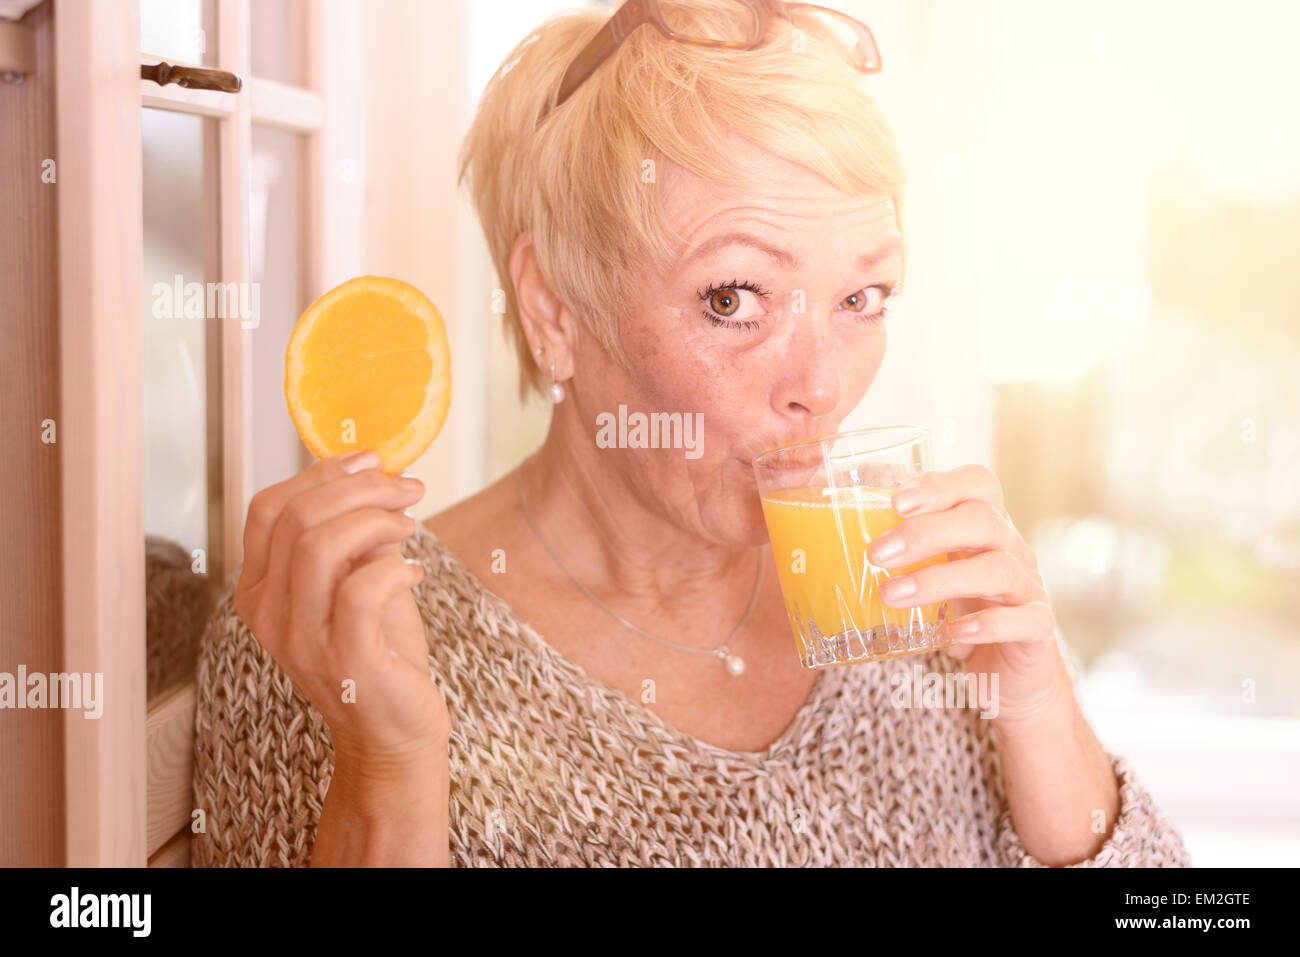 Nahes hohes Mittelalter blonde Frau trinkt Orangensaft und halten eine Orange Fruit Slice während lehnen an der Wand Stockfoto